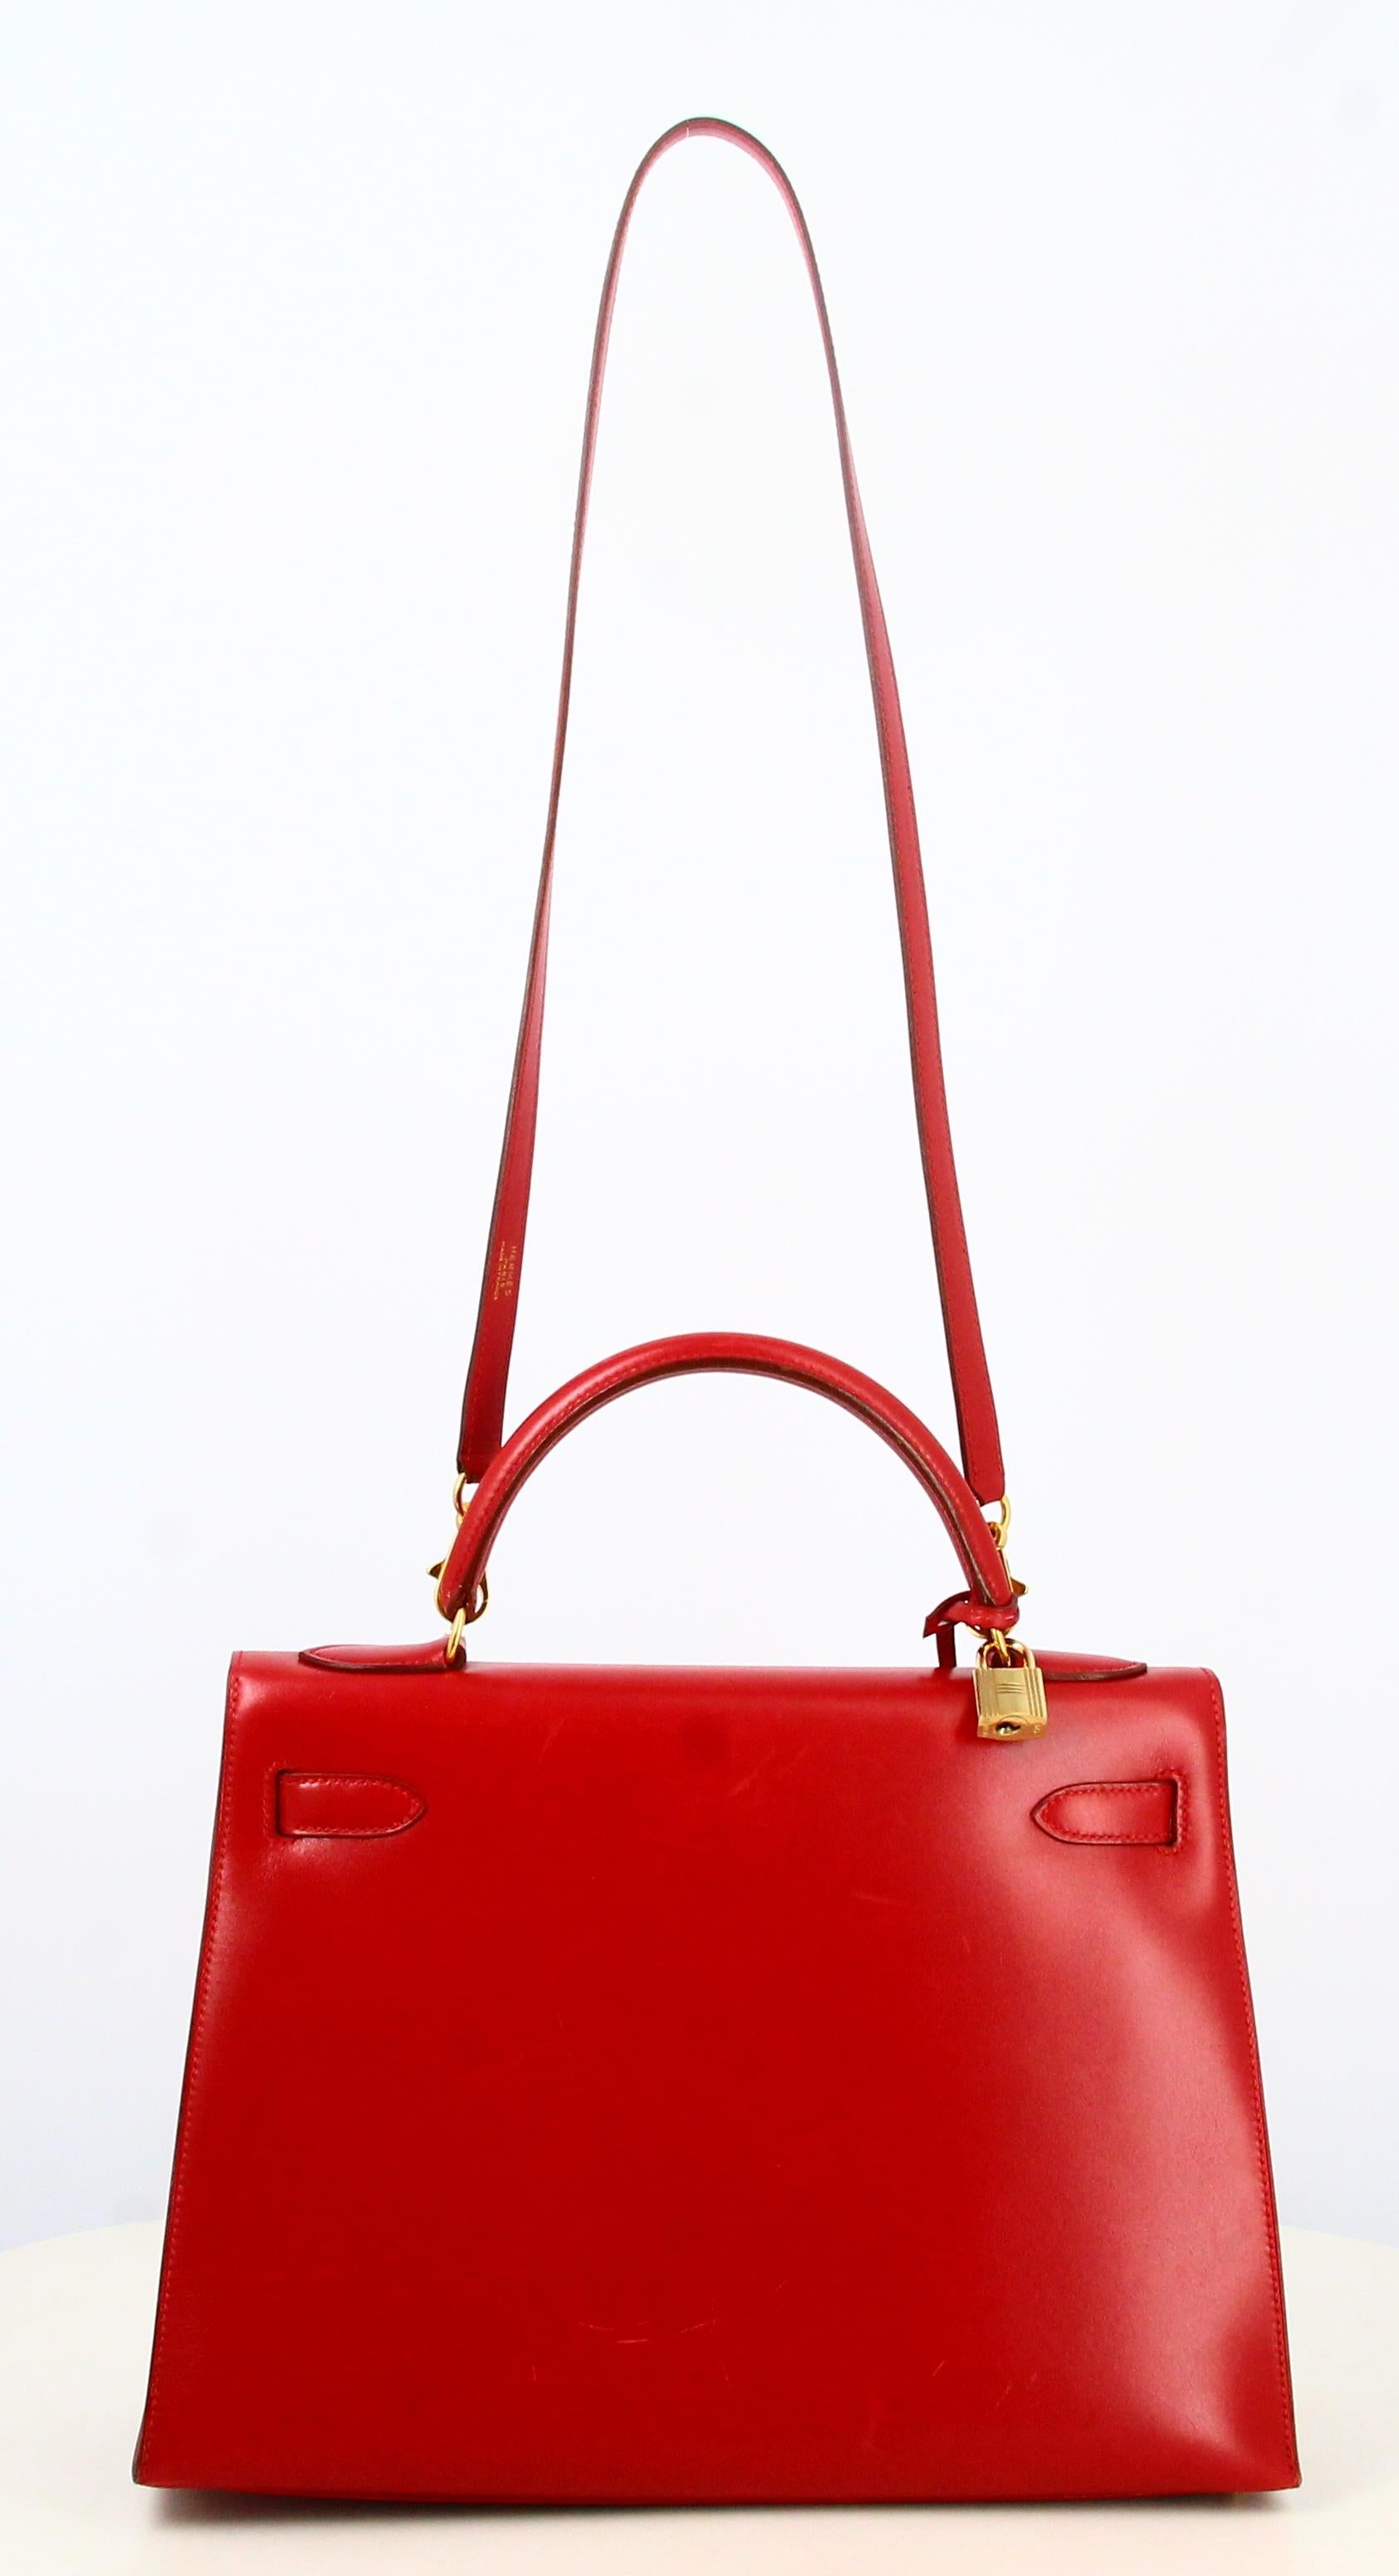 1983 Hermes Kelly Handbag Red Leather  For Sale 2